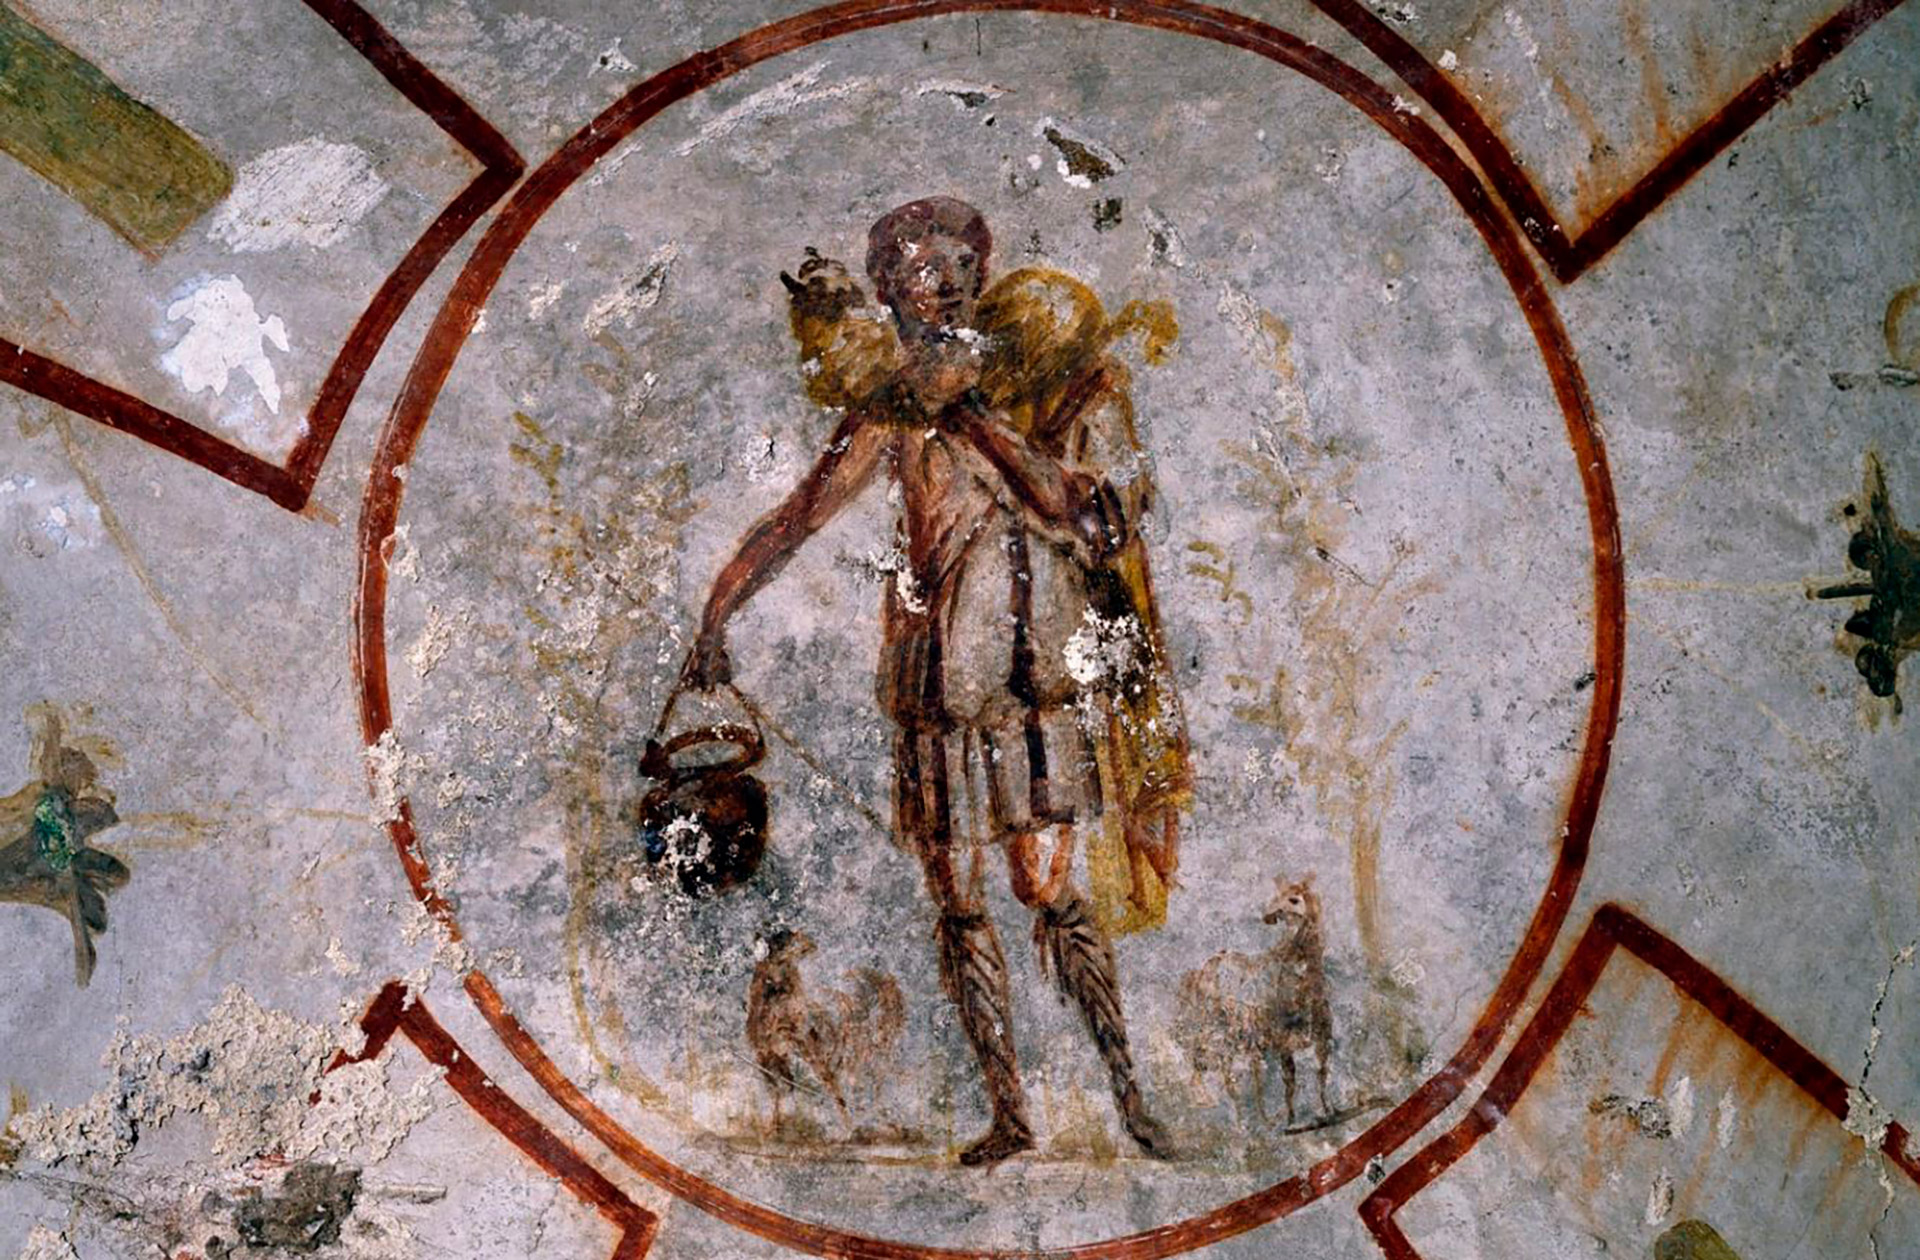 Íconos religiosos: cómo pintaban a Dios los primeros cristianos y la destrucción de las imágenes en la Reforma